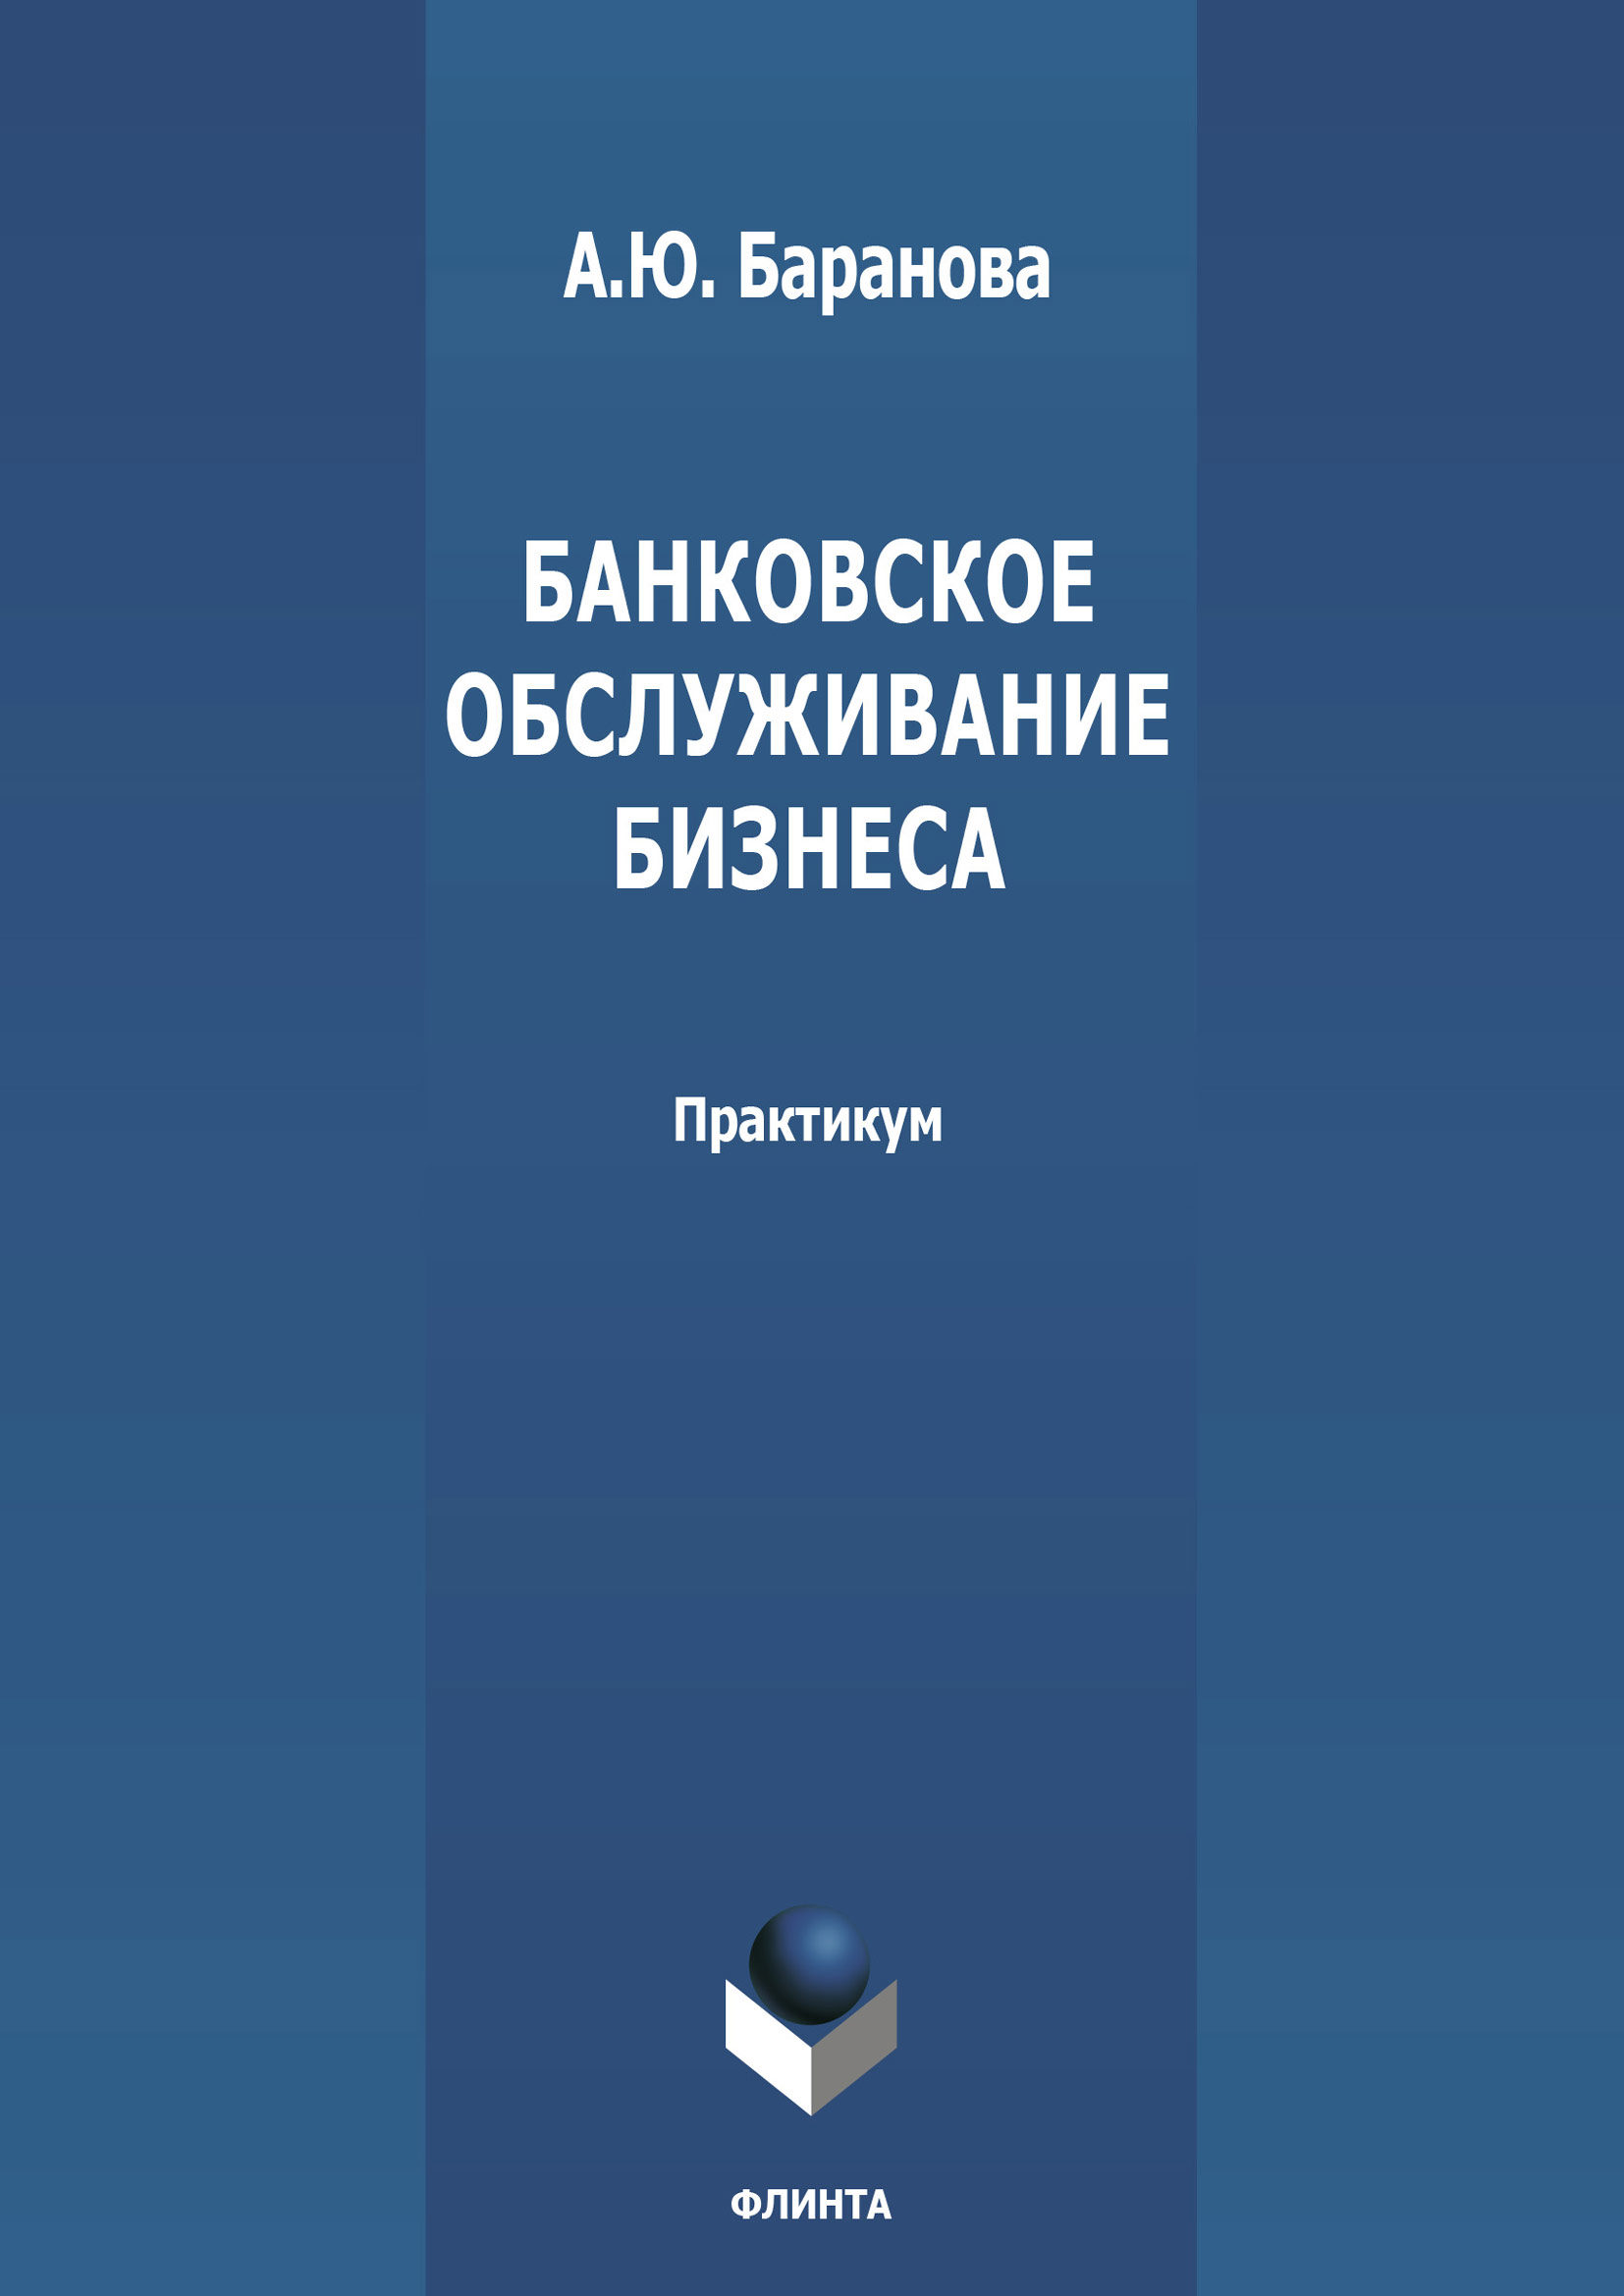 Книга  Банковское обслуживание бизнеса созданная А. Ю. Баранова может относится к жанру банковское дело, практикумы. Стоимость электронной книги Банковское обслуживание бизнеса с идентификатором 66462100 составляет 55.00 руб.